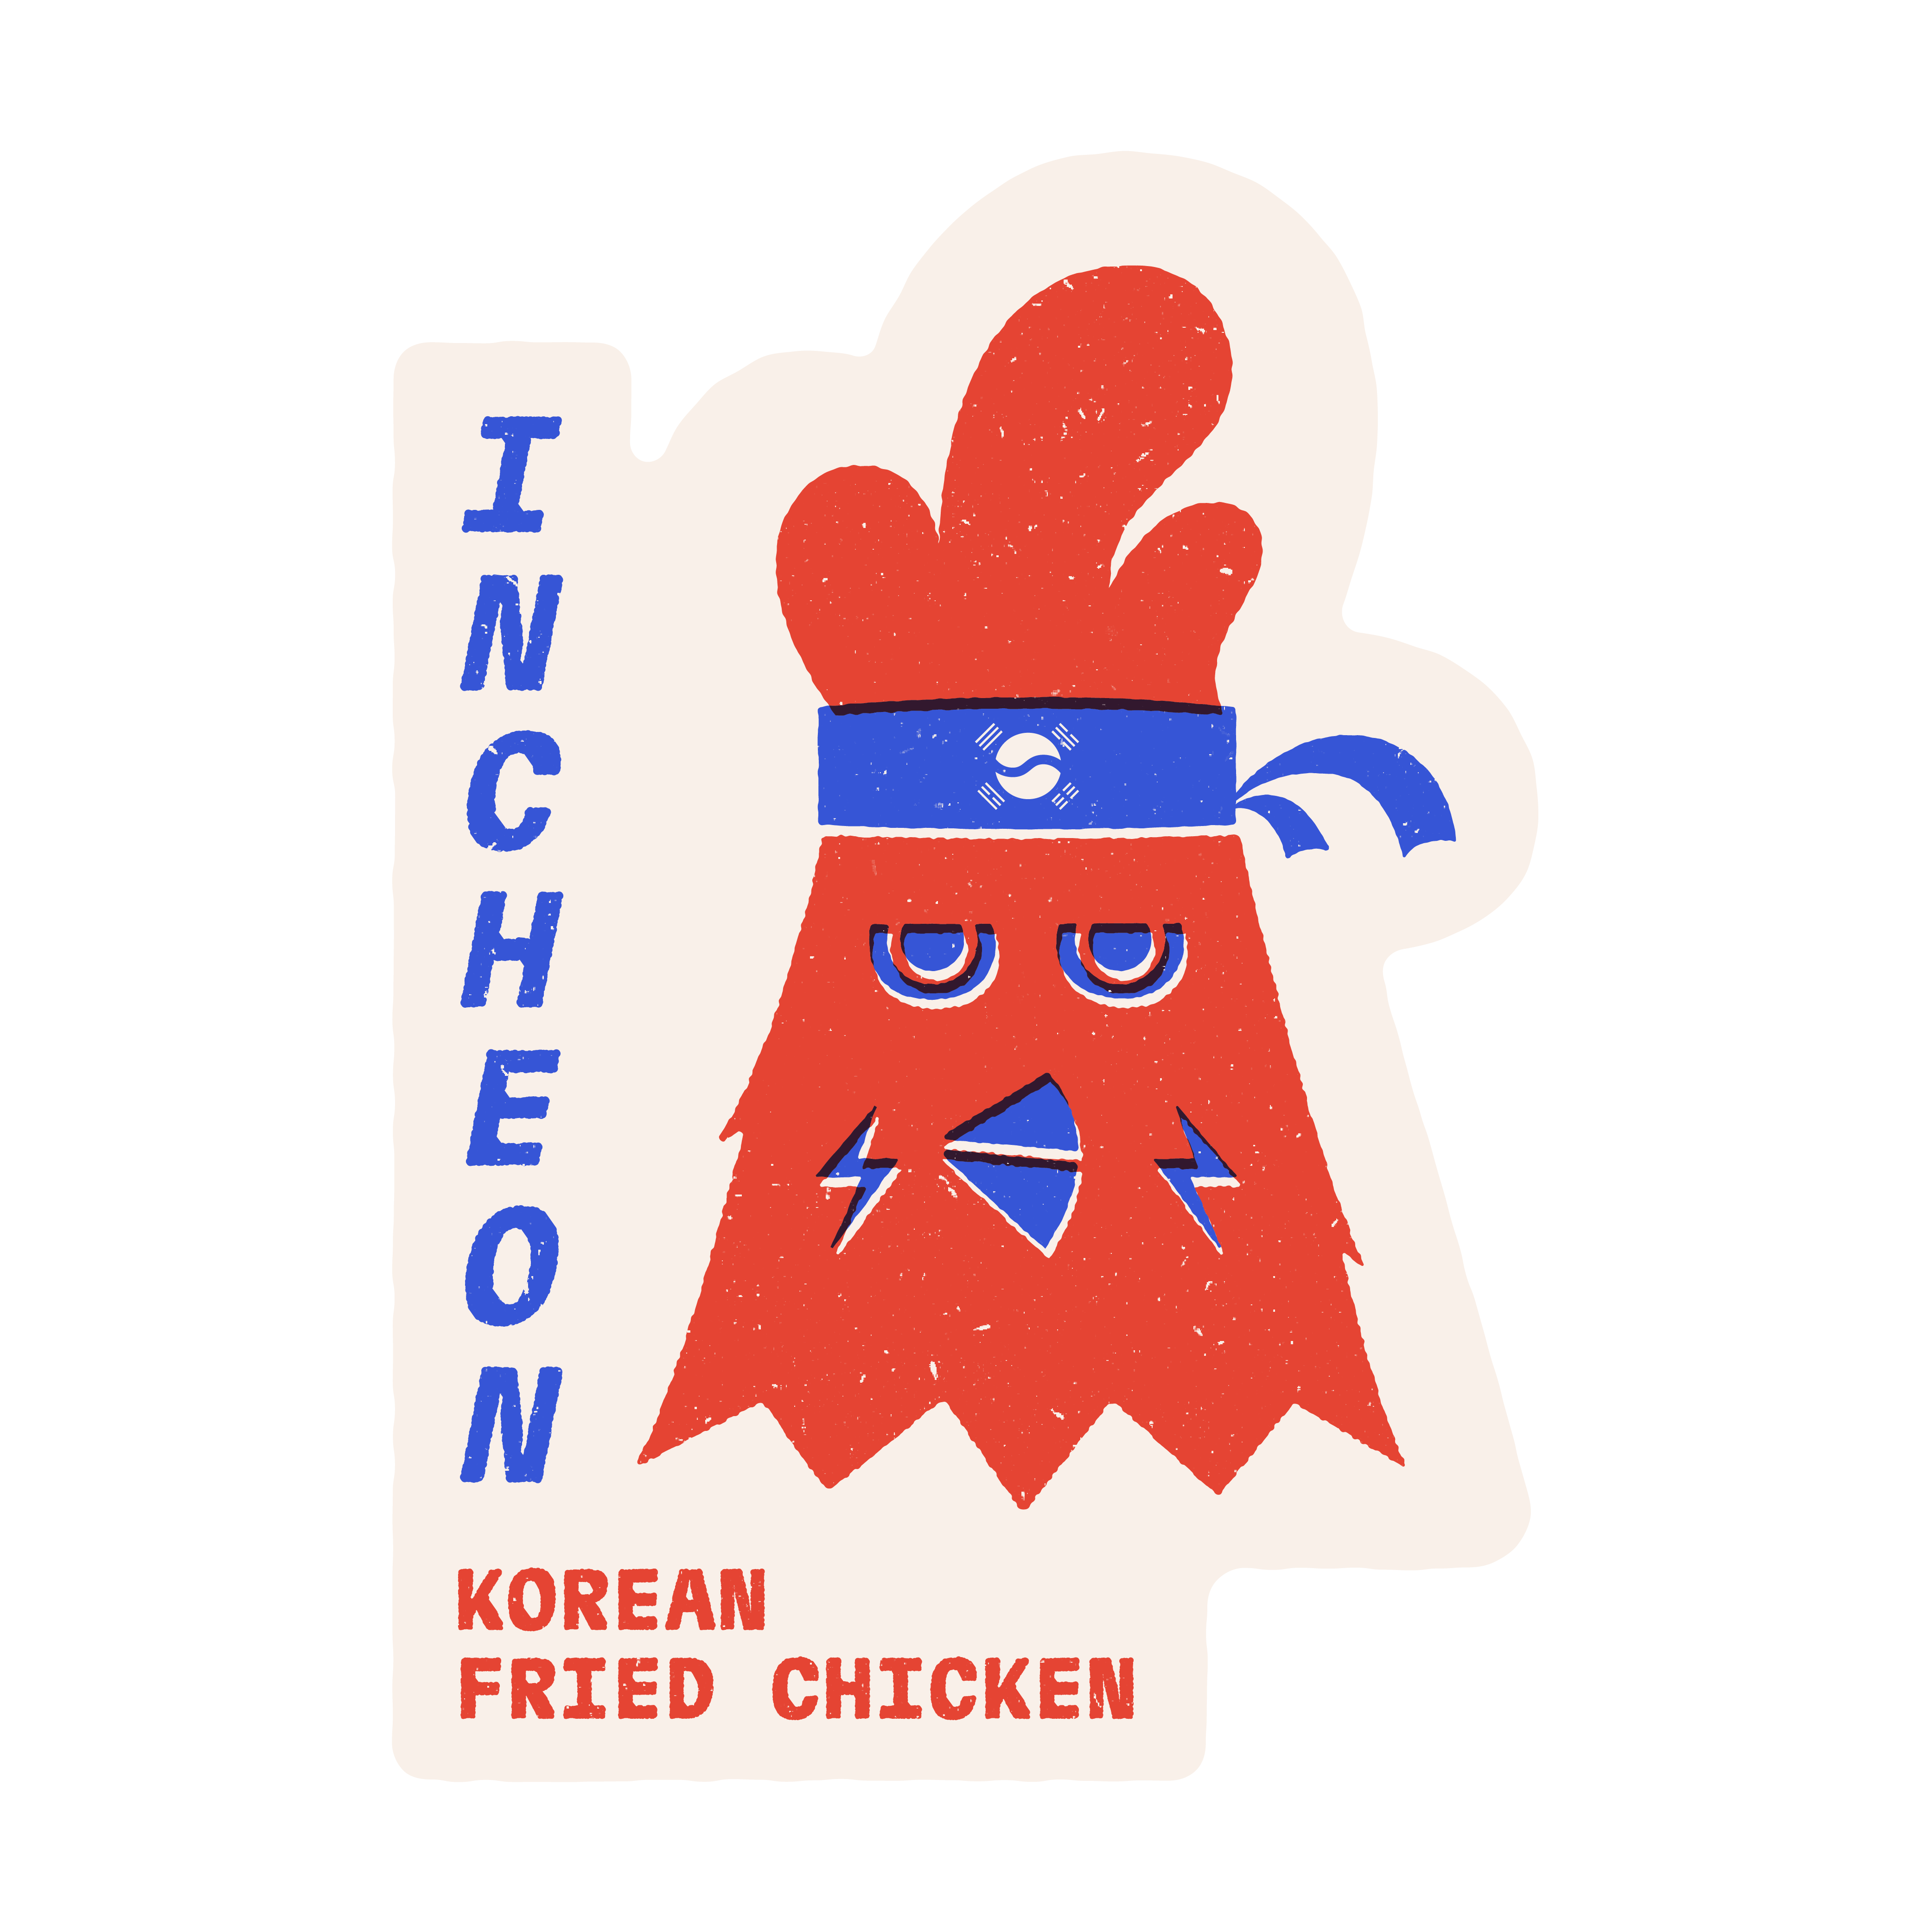 Yu.eat, yueat, Yu.eat, yu eat: Incheon Logo